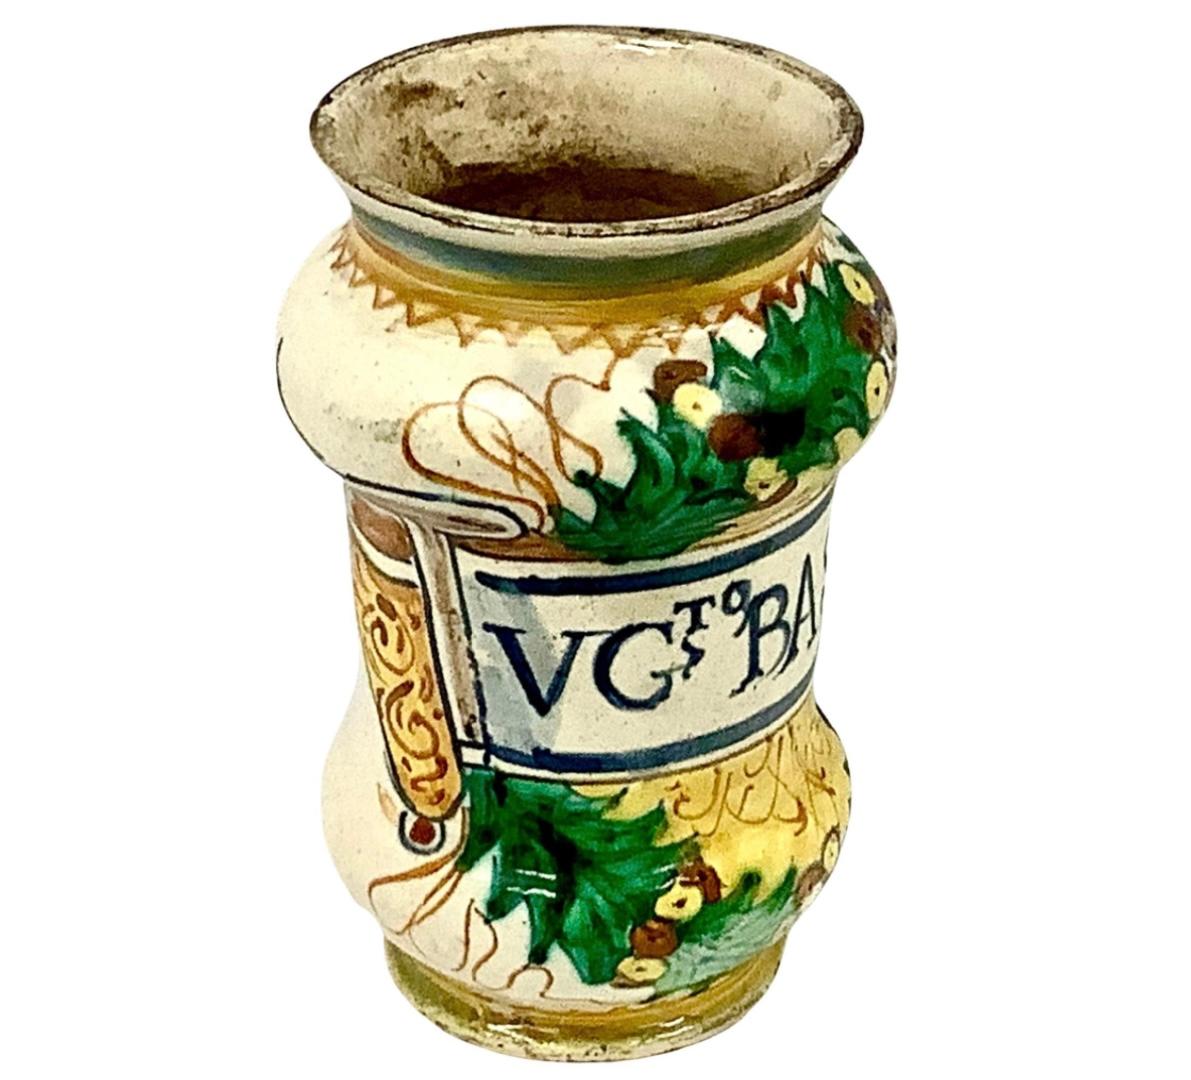 Italienisches Fayence-Keramik-Apothekergefäß aus dem 17. Helle Farben von Gelb, Grün und Dunkelblau auf cremefarbenem Hintergrund. Die Schrift lautet 